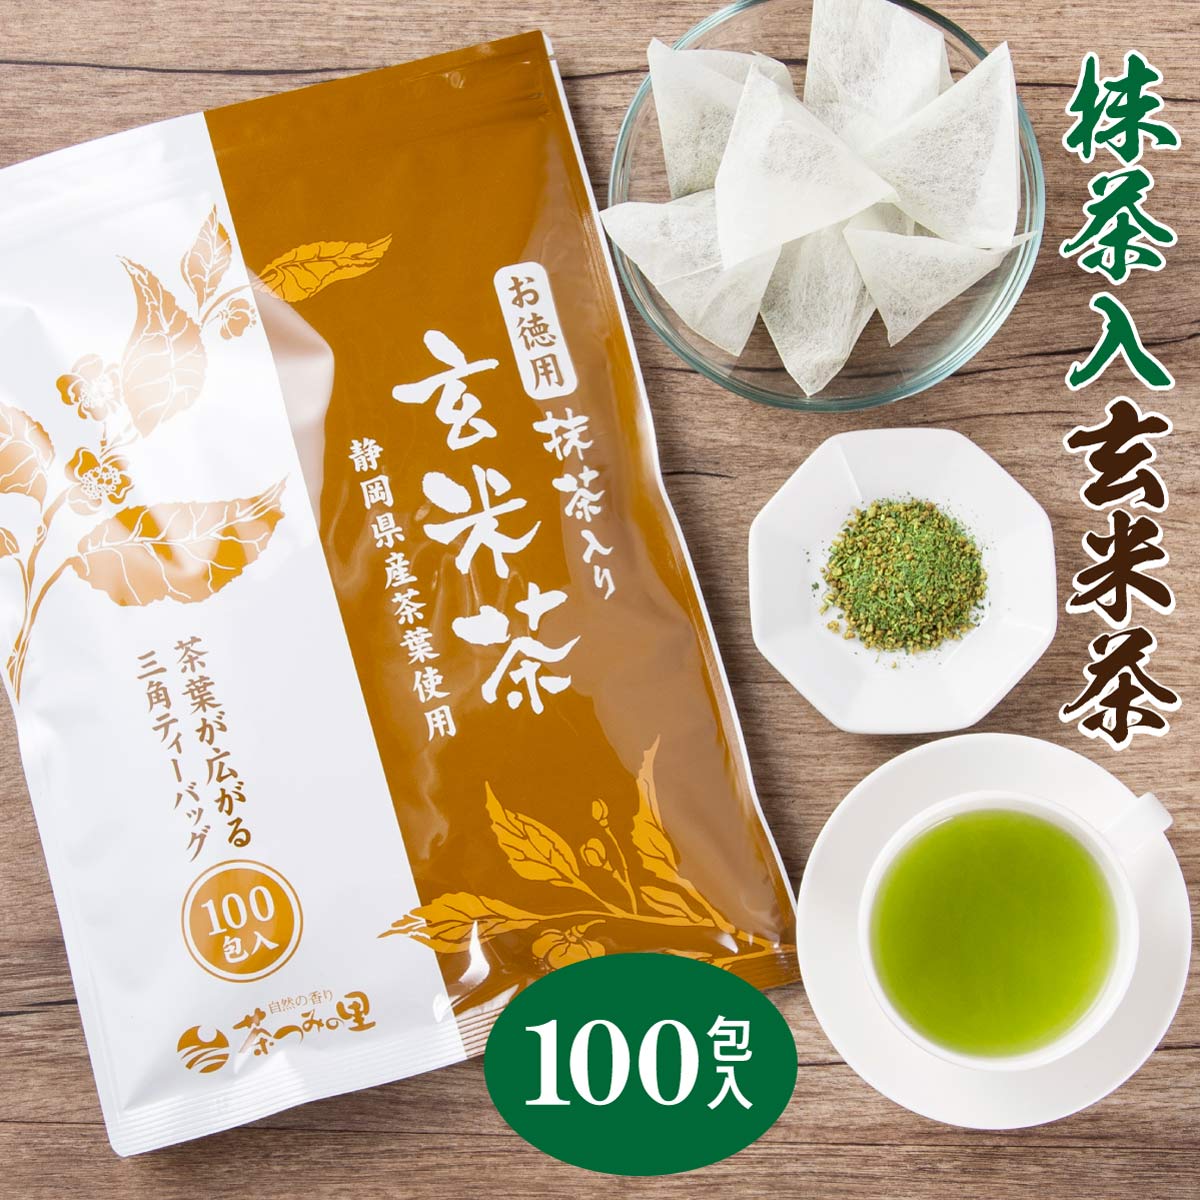 【期間限定価格】 抹茶入 玄米茶 ティーバッグ 2.5g×1